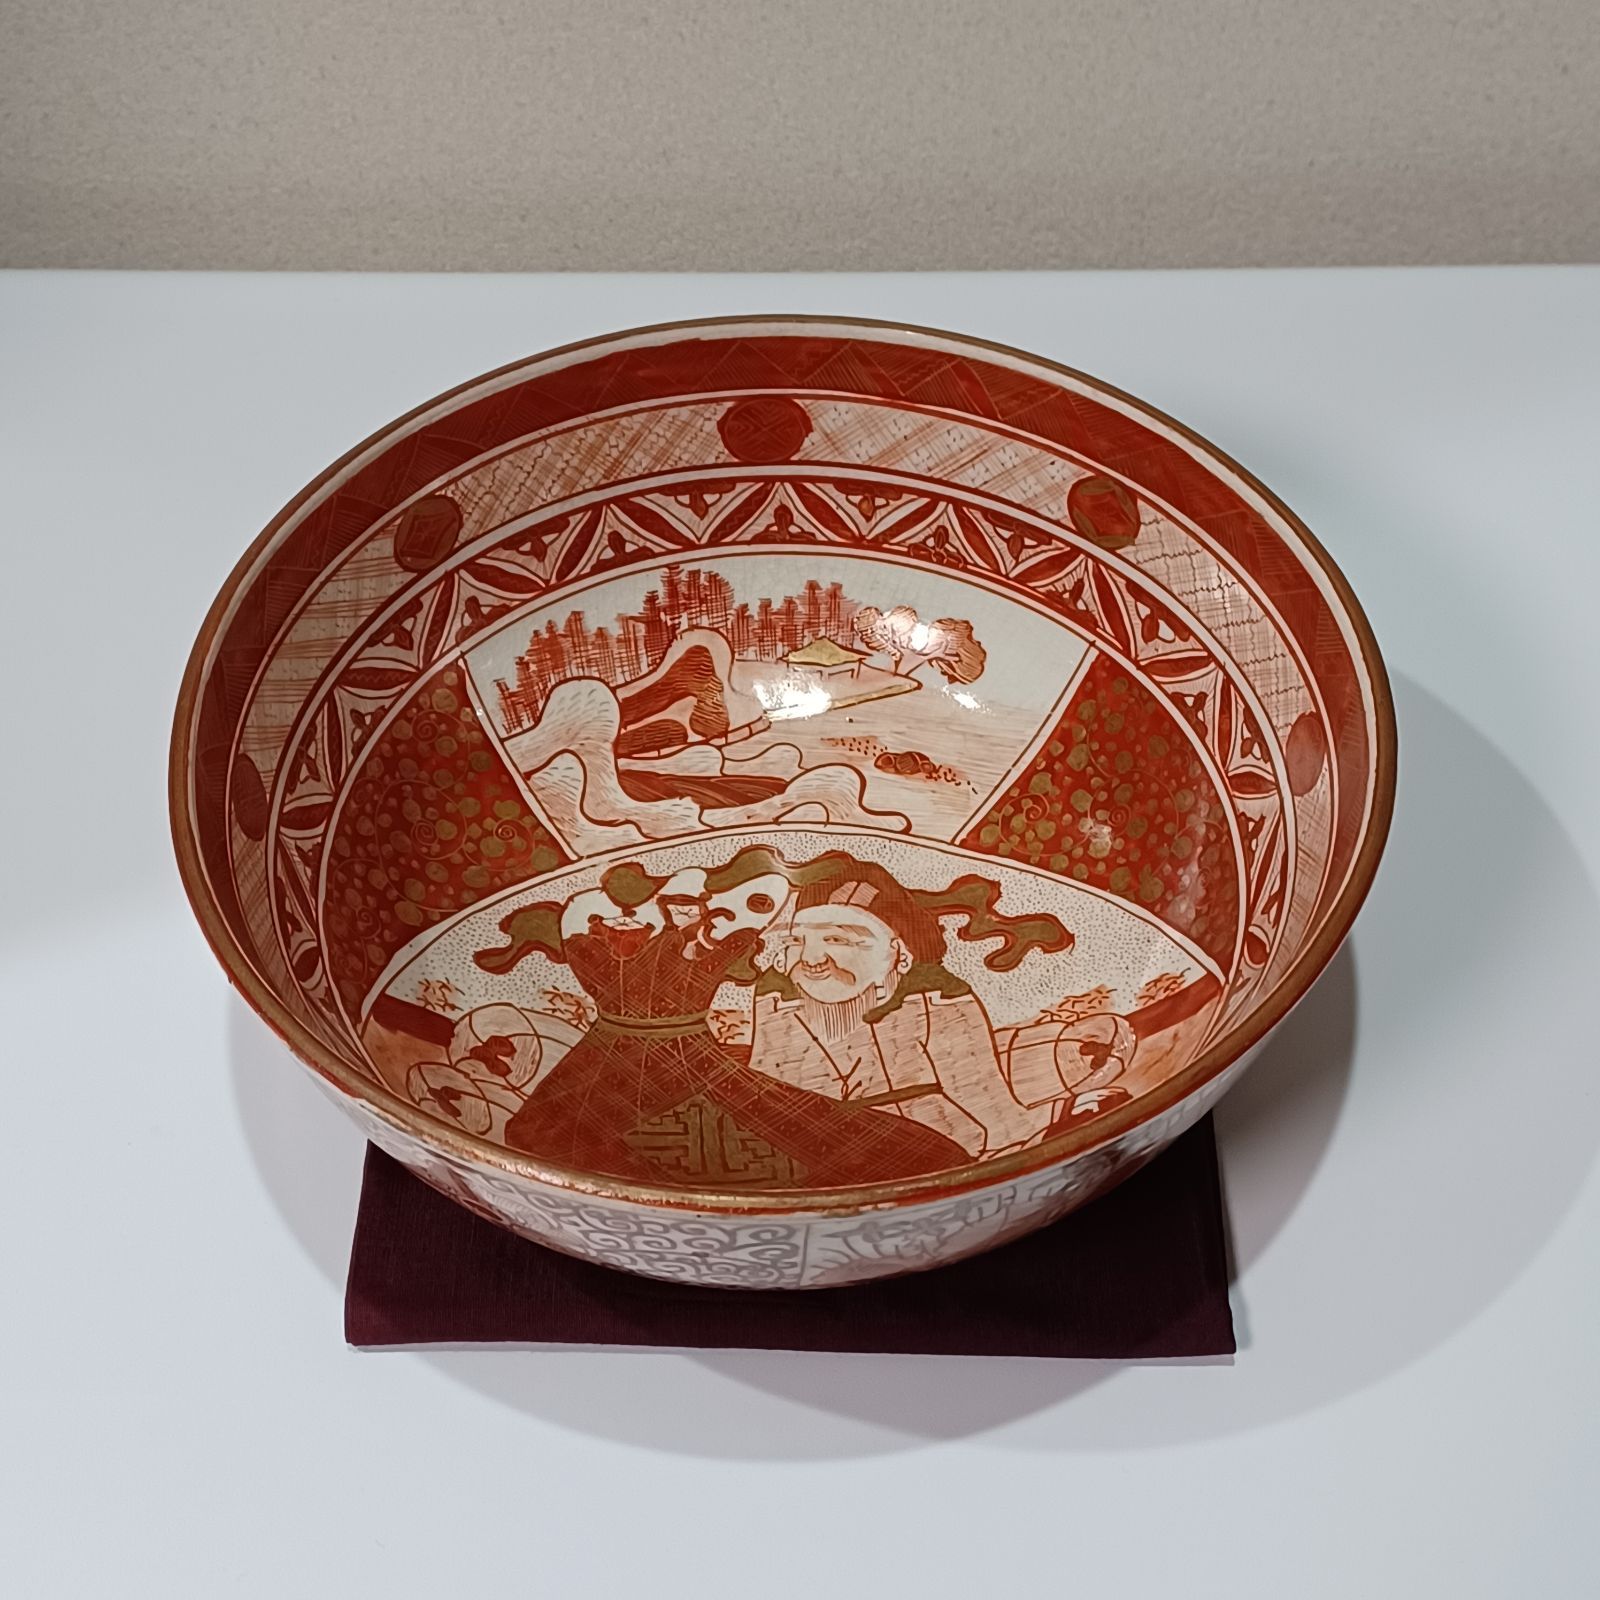 九谷焼の深鉢です。 赤絵の大黒天の意匠陶器屋亀鴻のお皿はこちら - wikiwirausaha.id